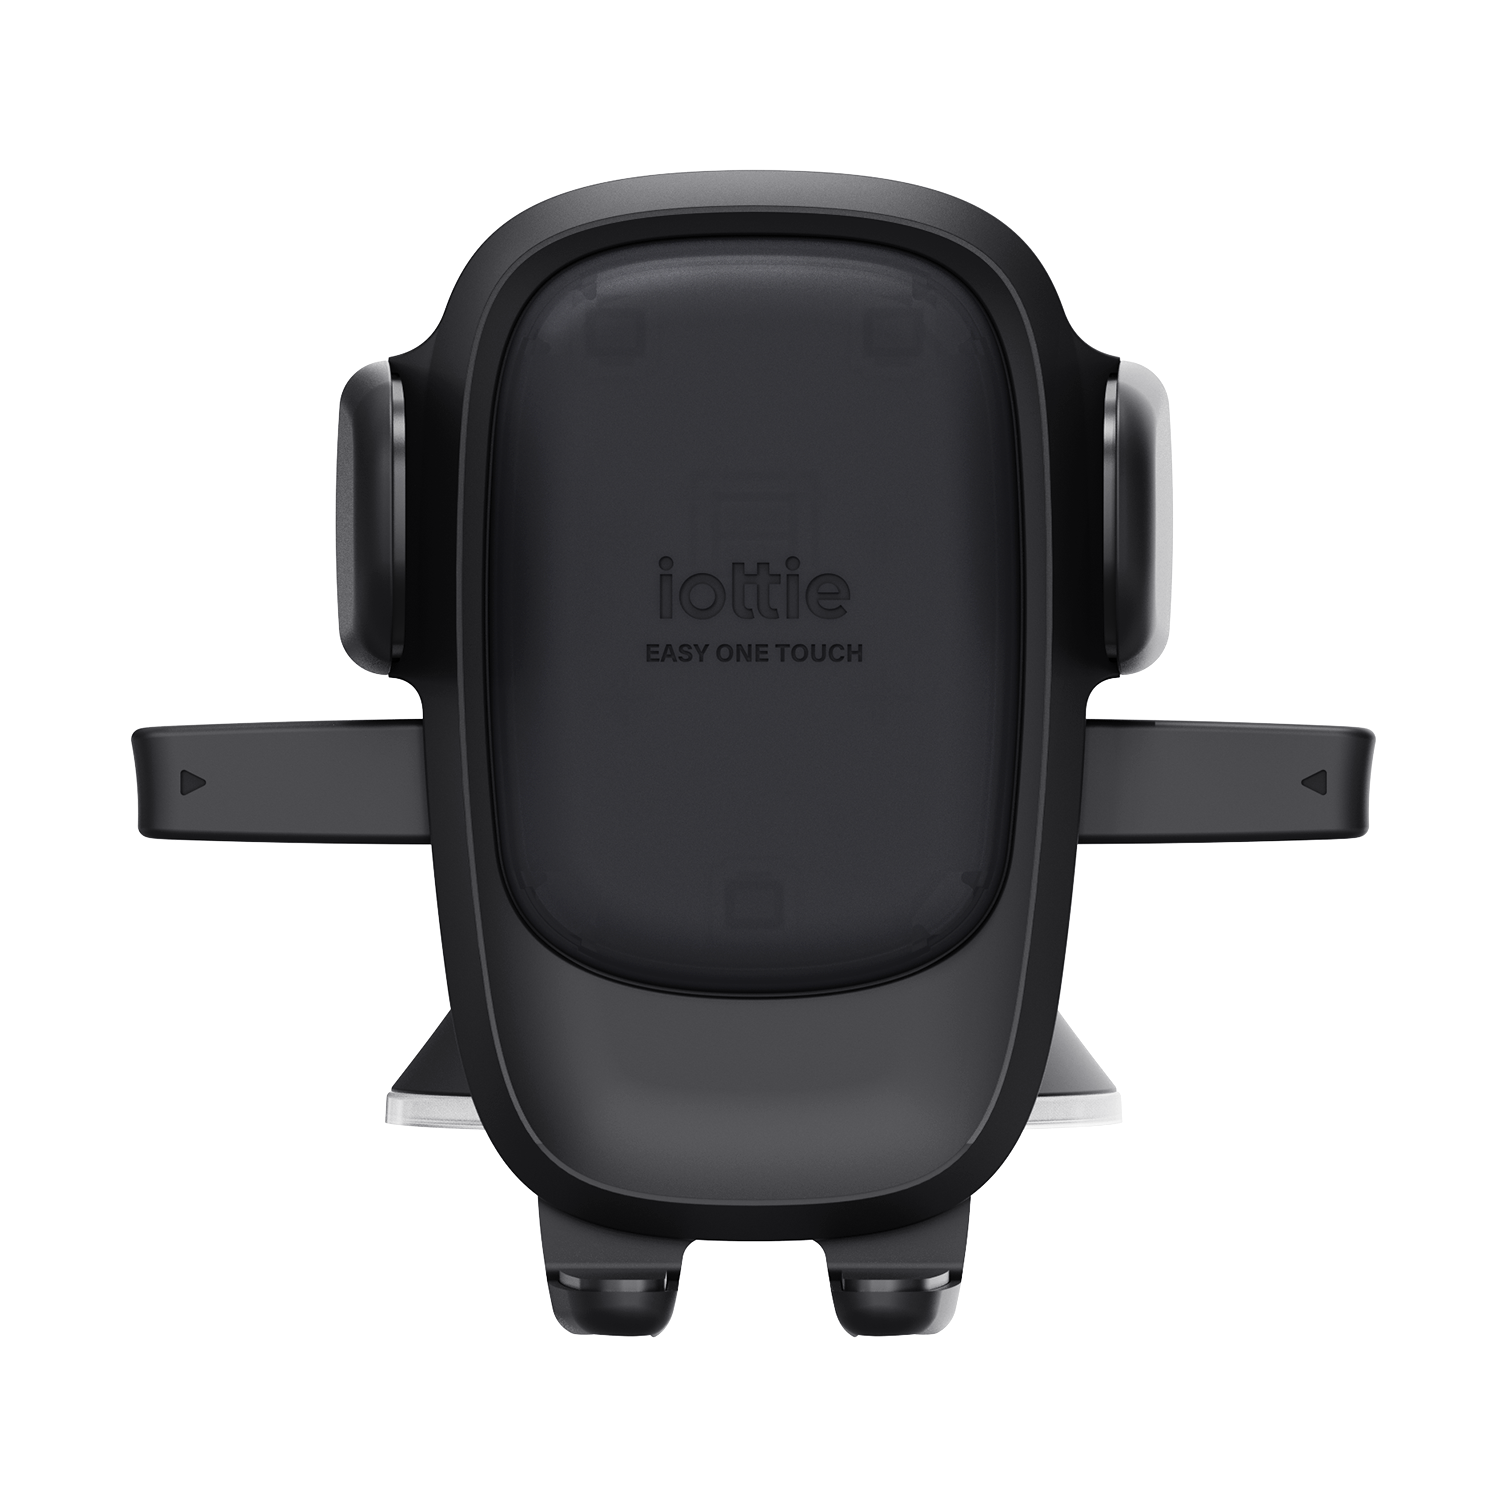 iOttie- Smartphone Car Mount – Schneider's Computing & Websites Ltd.